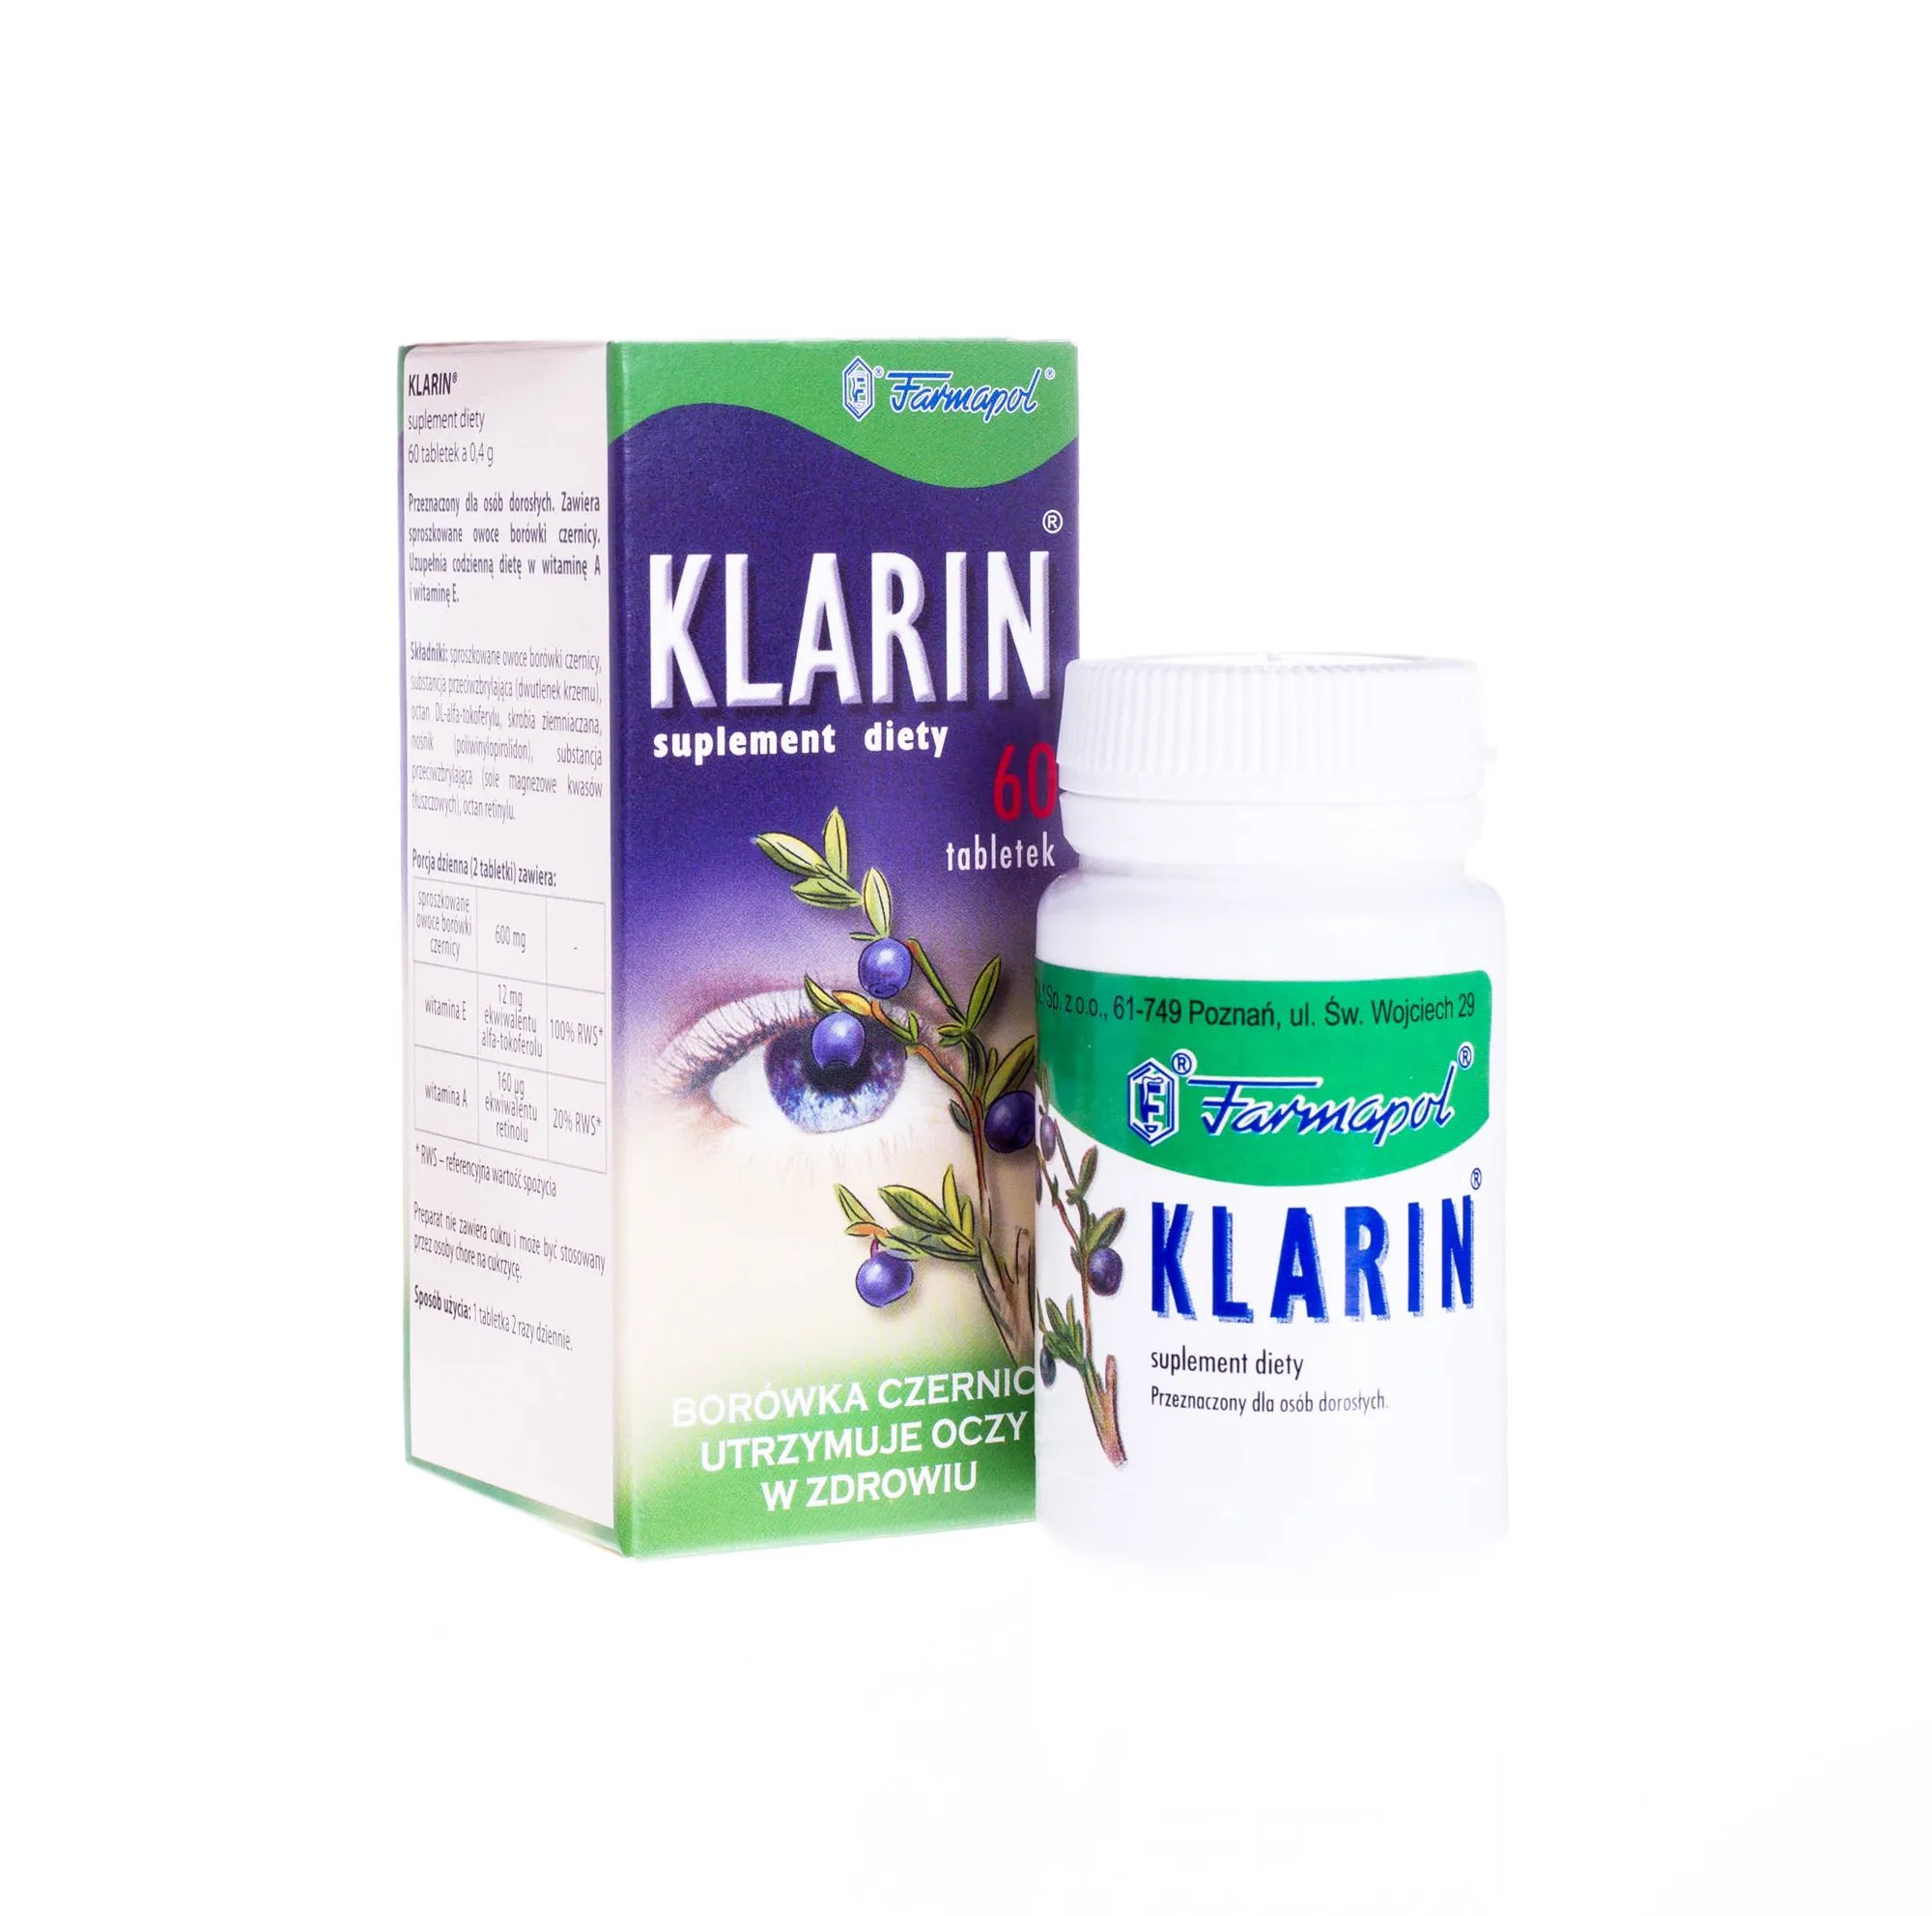 Klarin suplement diety - 60 tabletek z borówką czernica, który utrzymuje oczy w zdrowiu